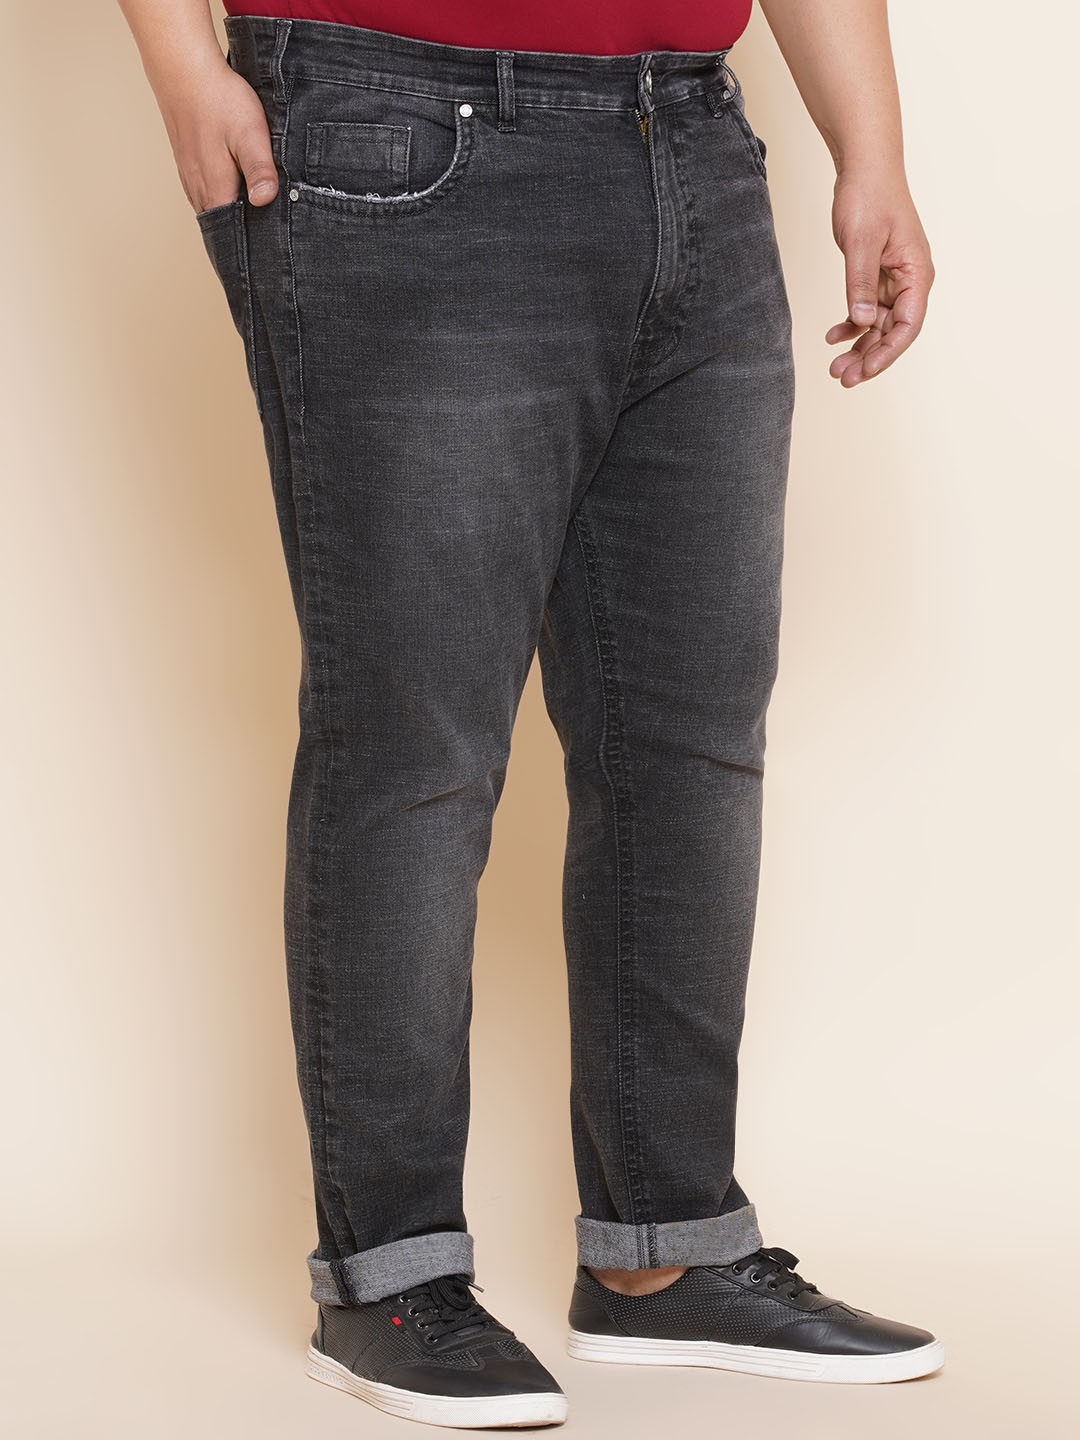 bottomwear/jeans/JPJ12295/jpj12295-3.jpg